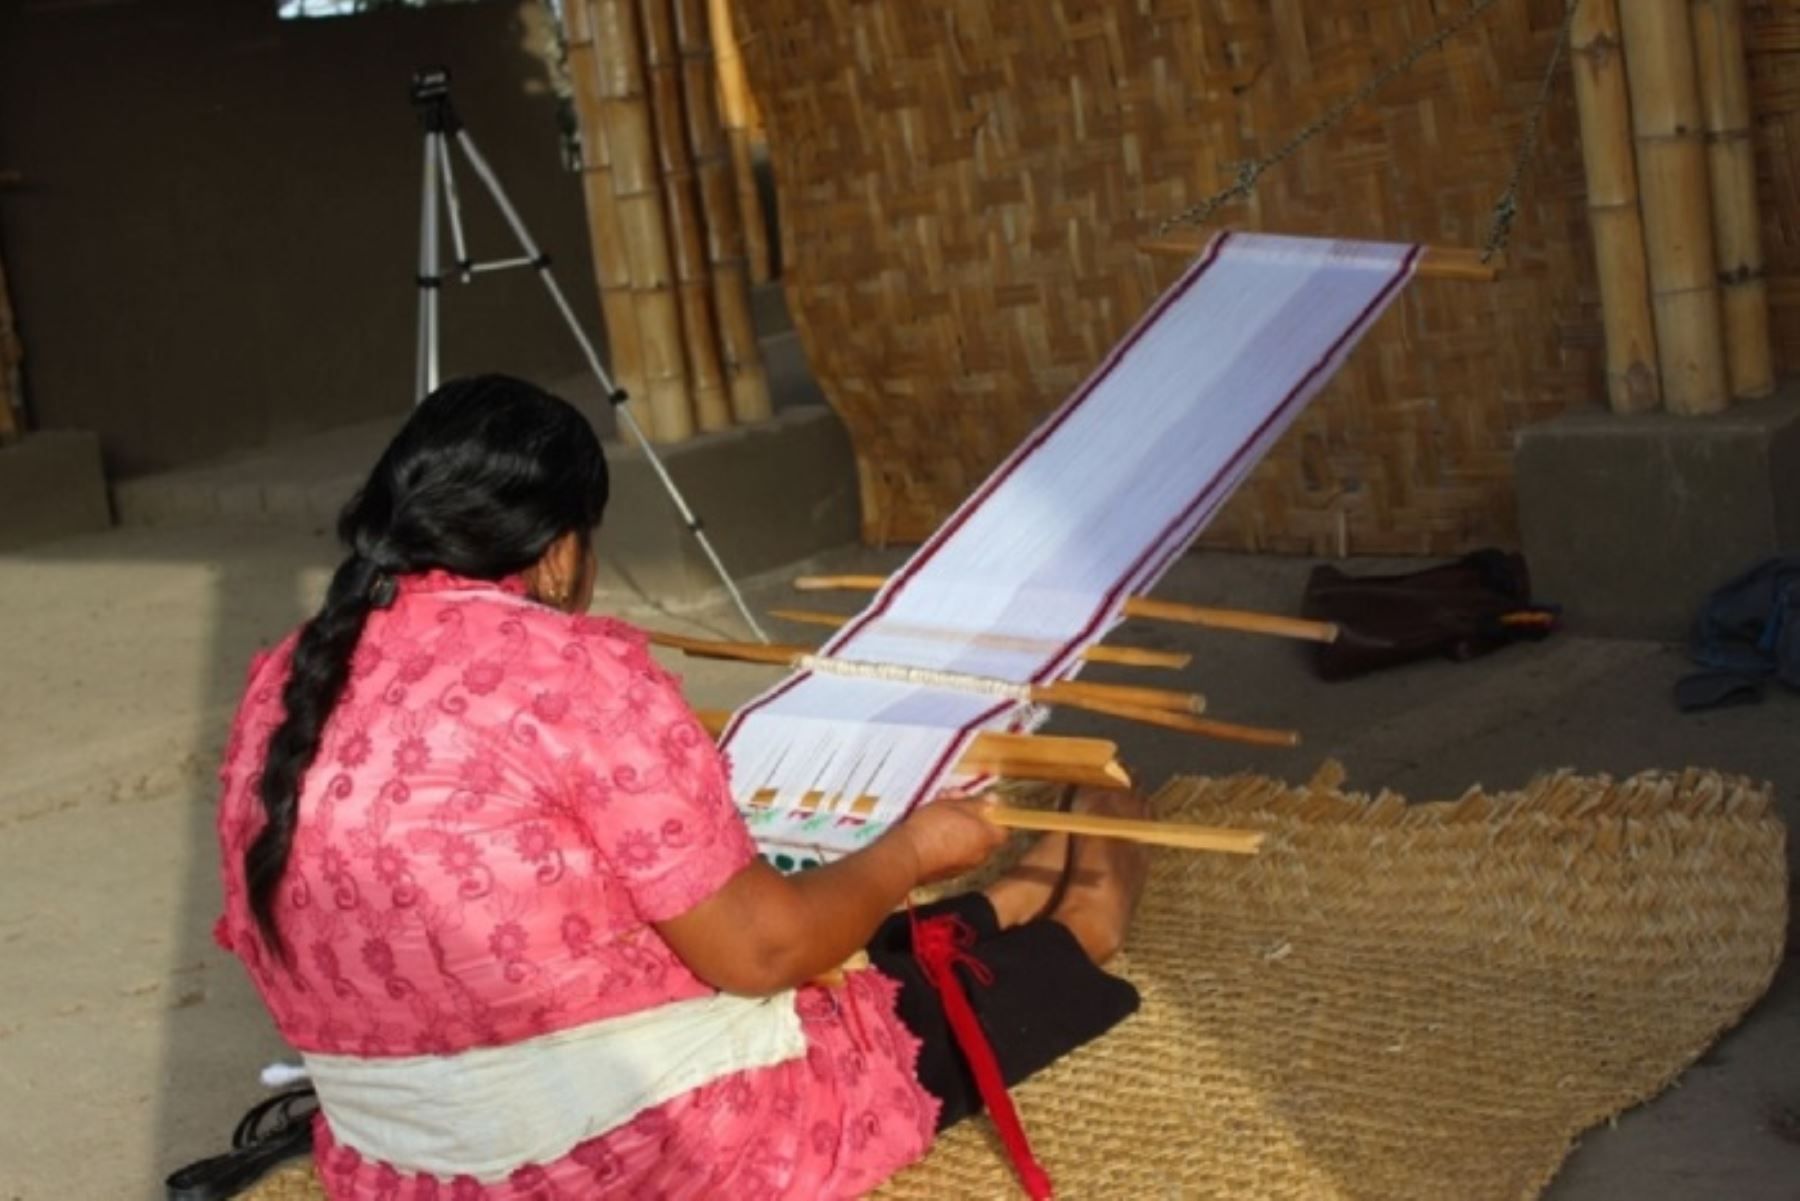 Artesanas norteñas mostrarán sus habilidades en el arte de tejer con práctica ancestral vigente hace 2,000 años en la región Lambayeque.